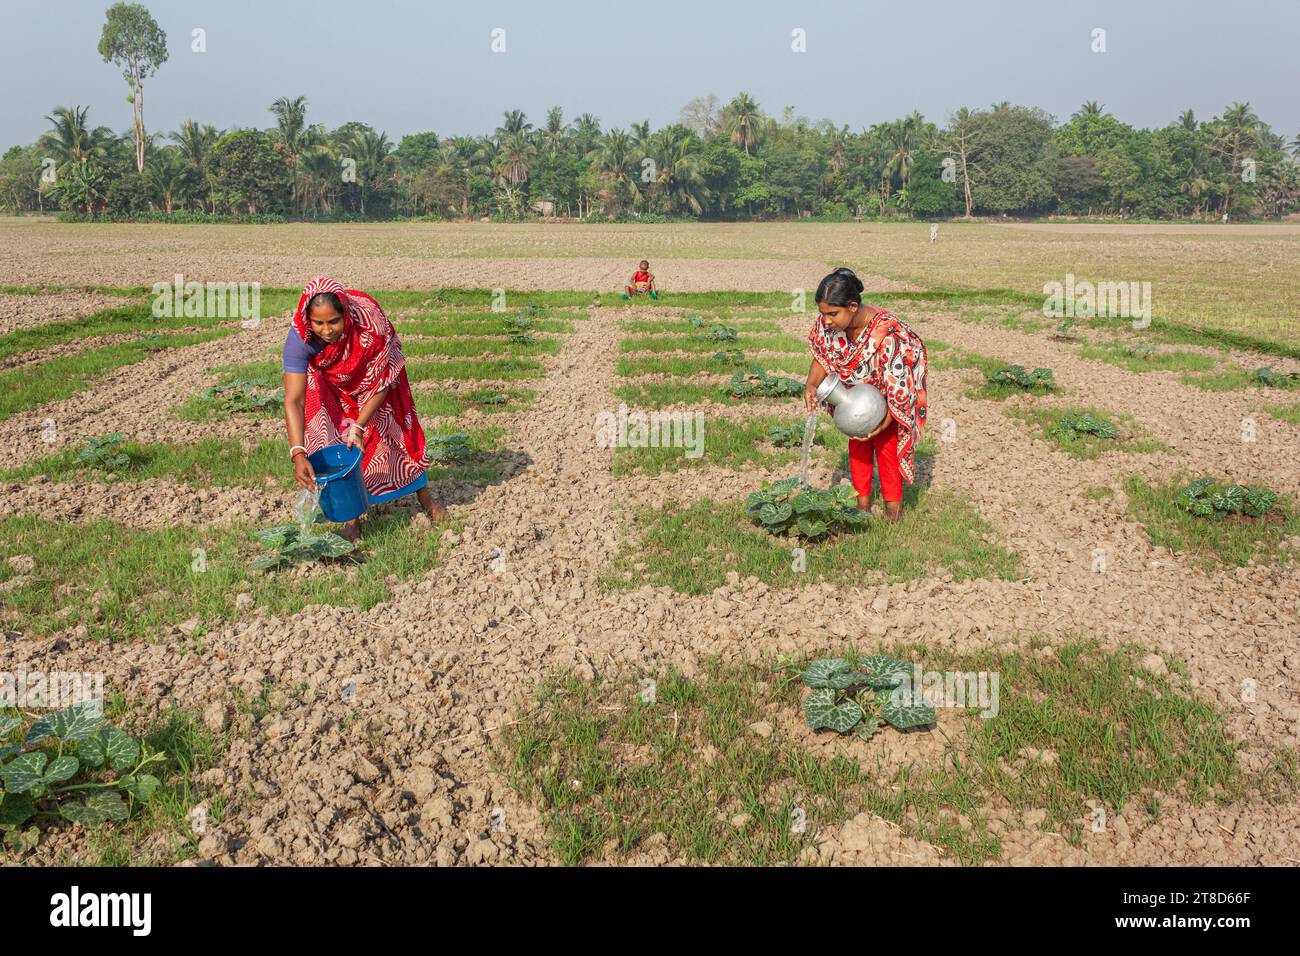 Qualche agricoltore lavora nel campo vegetale. Khulna, Bangladesh.marzo 25,2016. Foto Stock